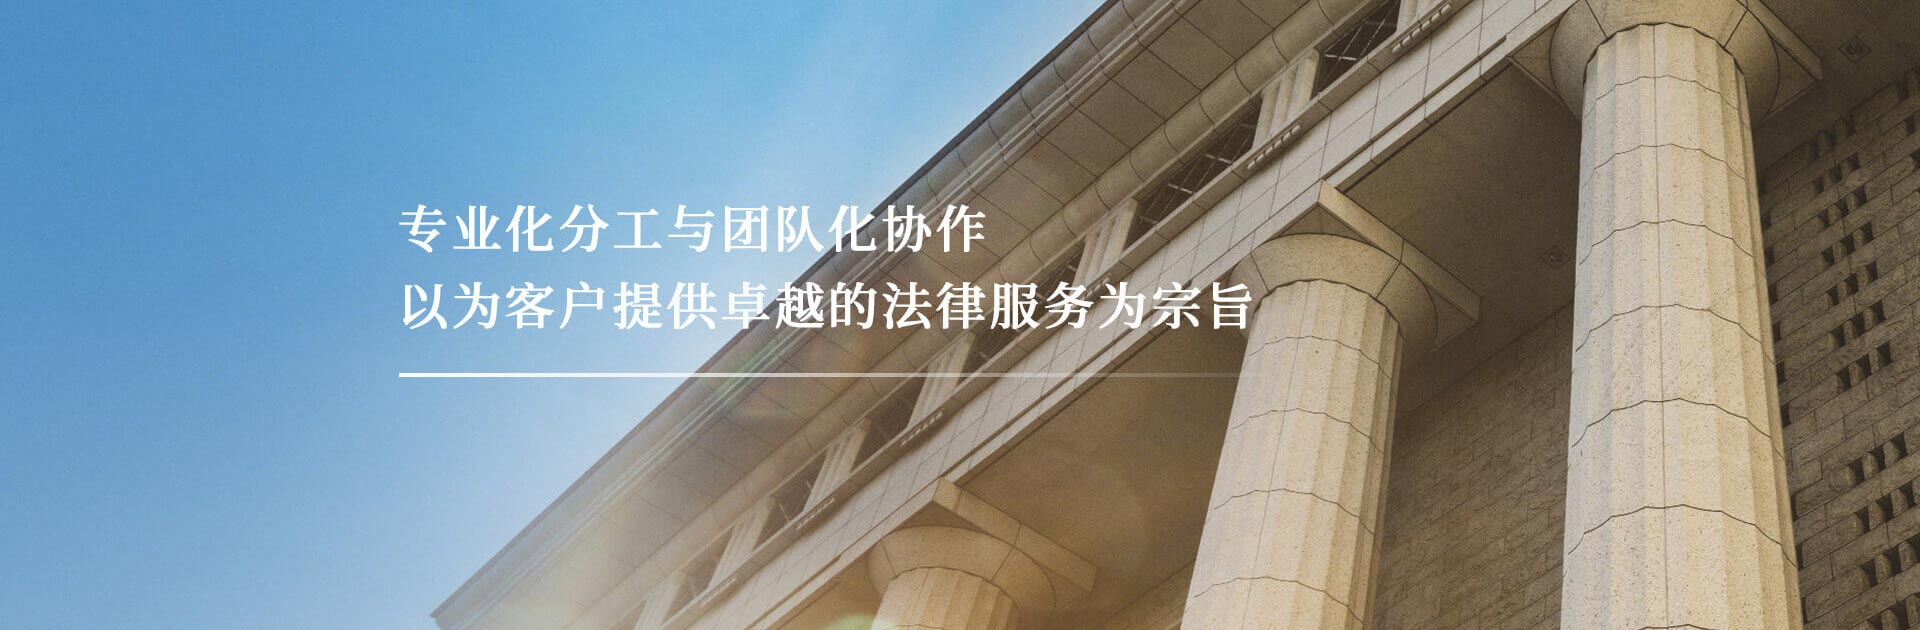 北京楹庭律师事务-专业化分工与团队化协作，以为客户提供卓越的法律服务为宗旨